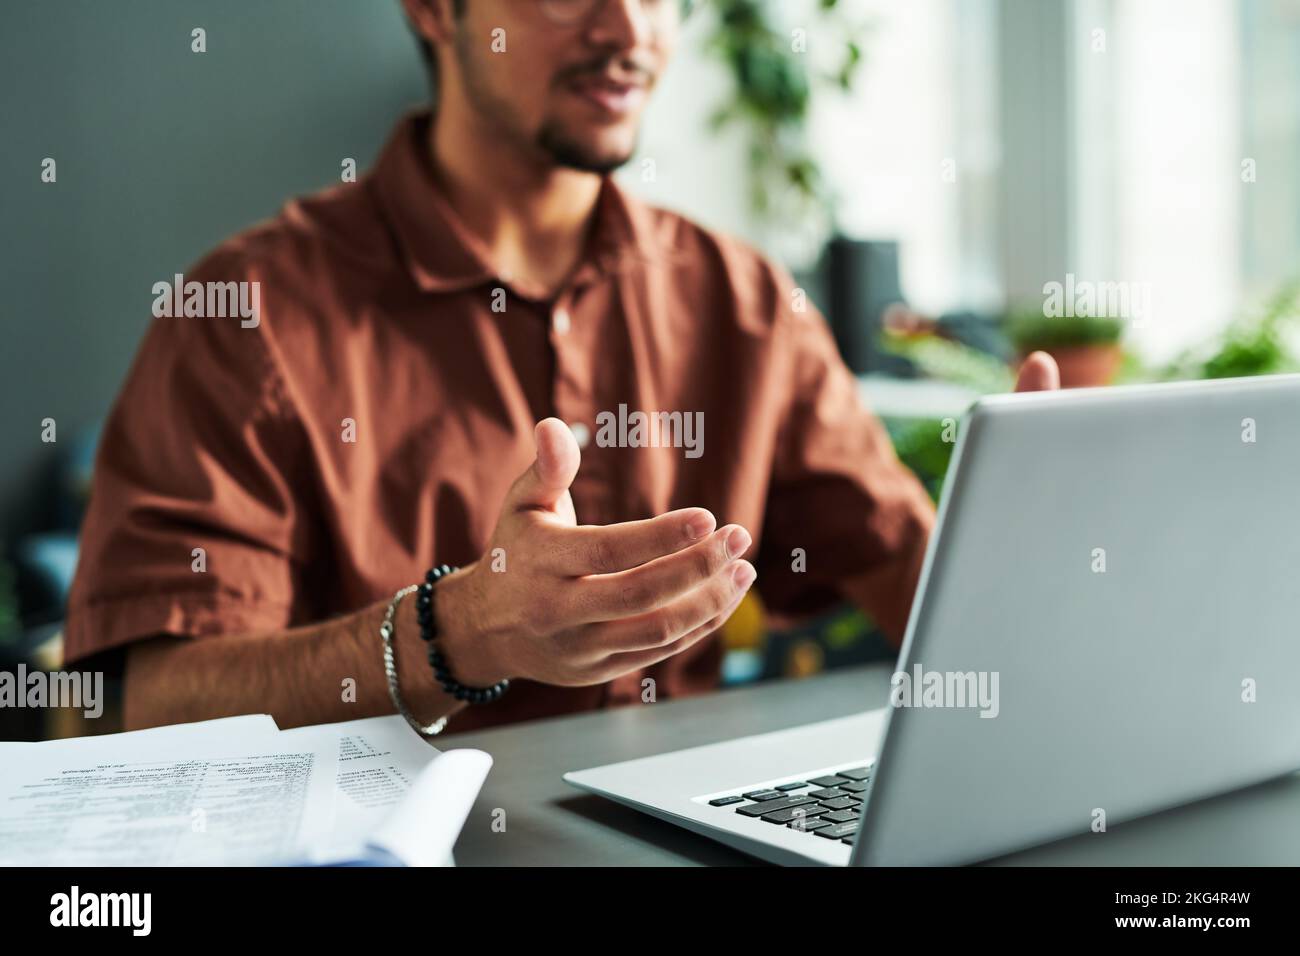 Concentrez-vous sur le jeune tuteur ou étudiant expliquant quelque chose pendant la leçon en ligne tout en étant assis au bureau devant l'écran d'ordinateur portable Banque D'Images